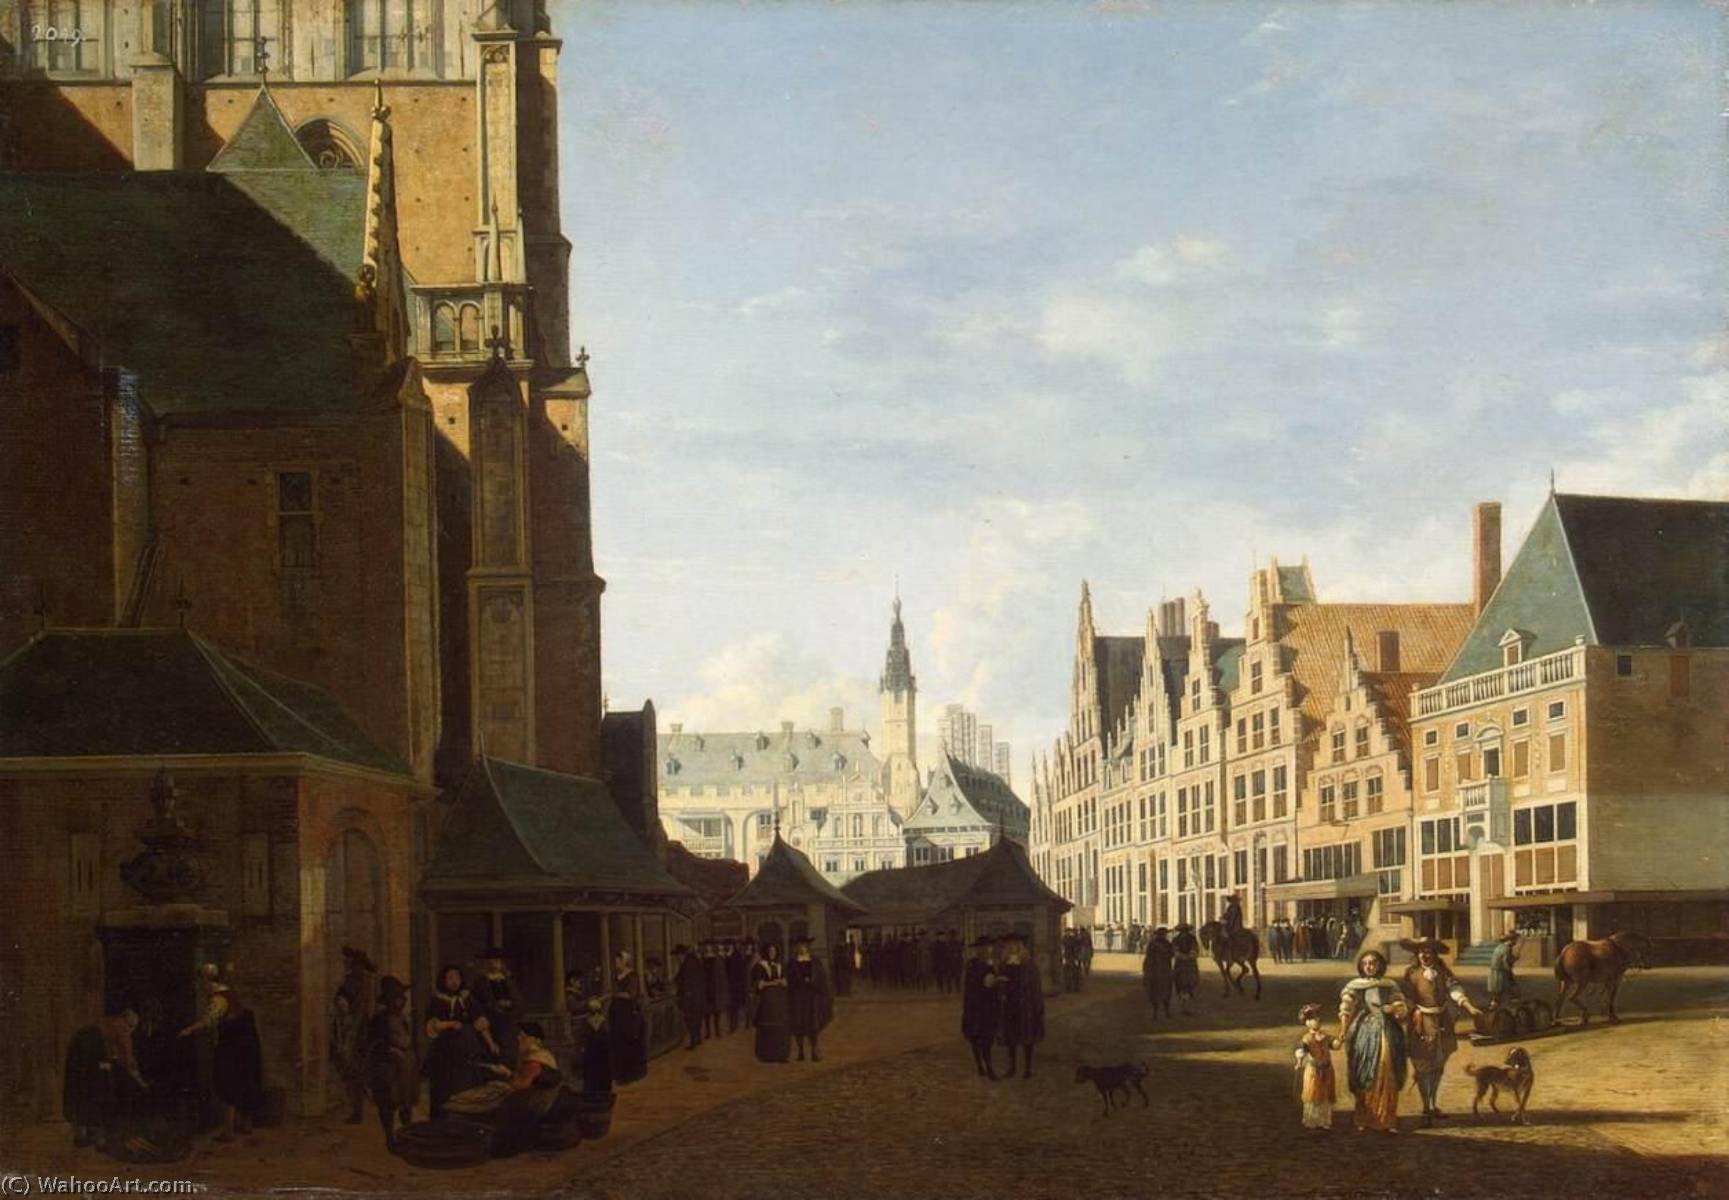 WikiOO.org - Encyclopedia of Fine Arts - Maleri, Artwork Gerrit Adriaenszoon Berckheyde - The Groote Market in Haarlem